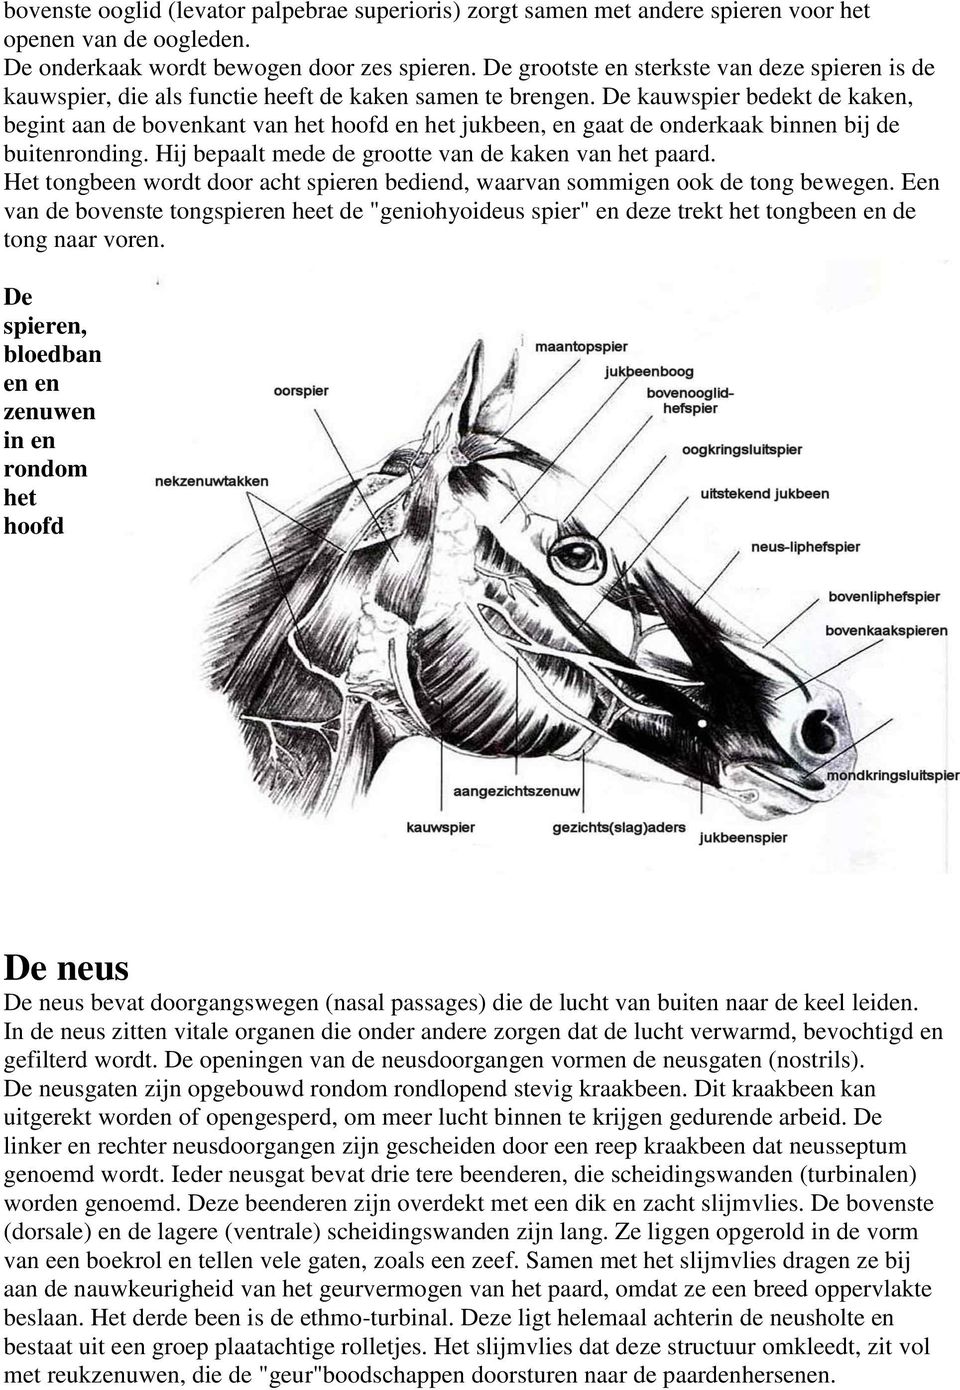 De kauwspier bedekt de kaken, begint aan de bovenkant van het hoofd en het jukbeen, en gaat de onderkaak binnen bij de buitenronding. Hij bepaalt mede de grootte van de kaken van het paard.